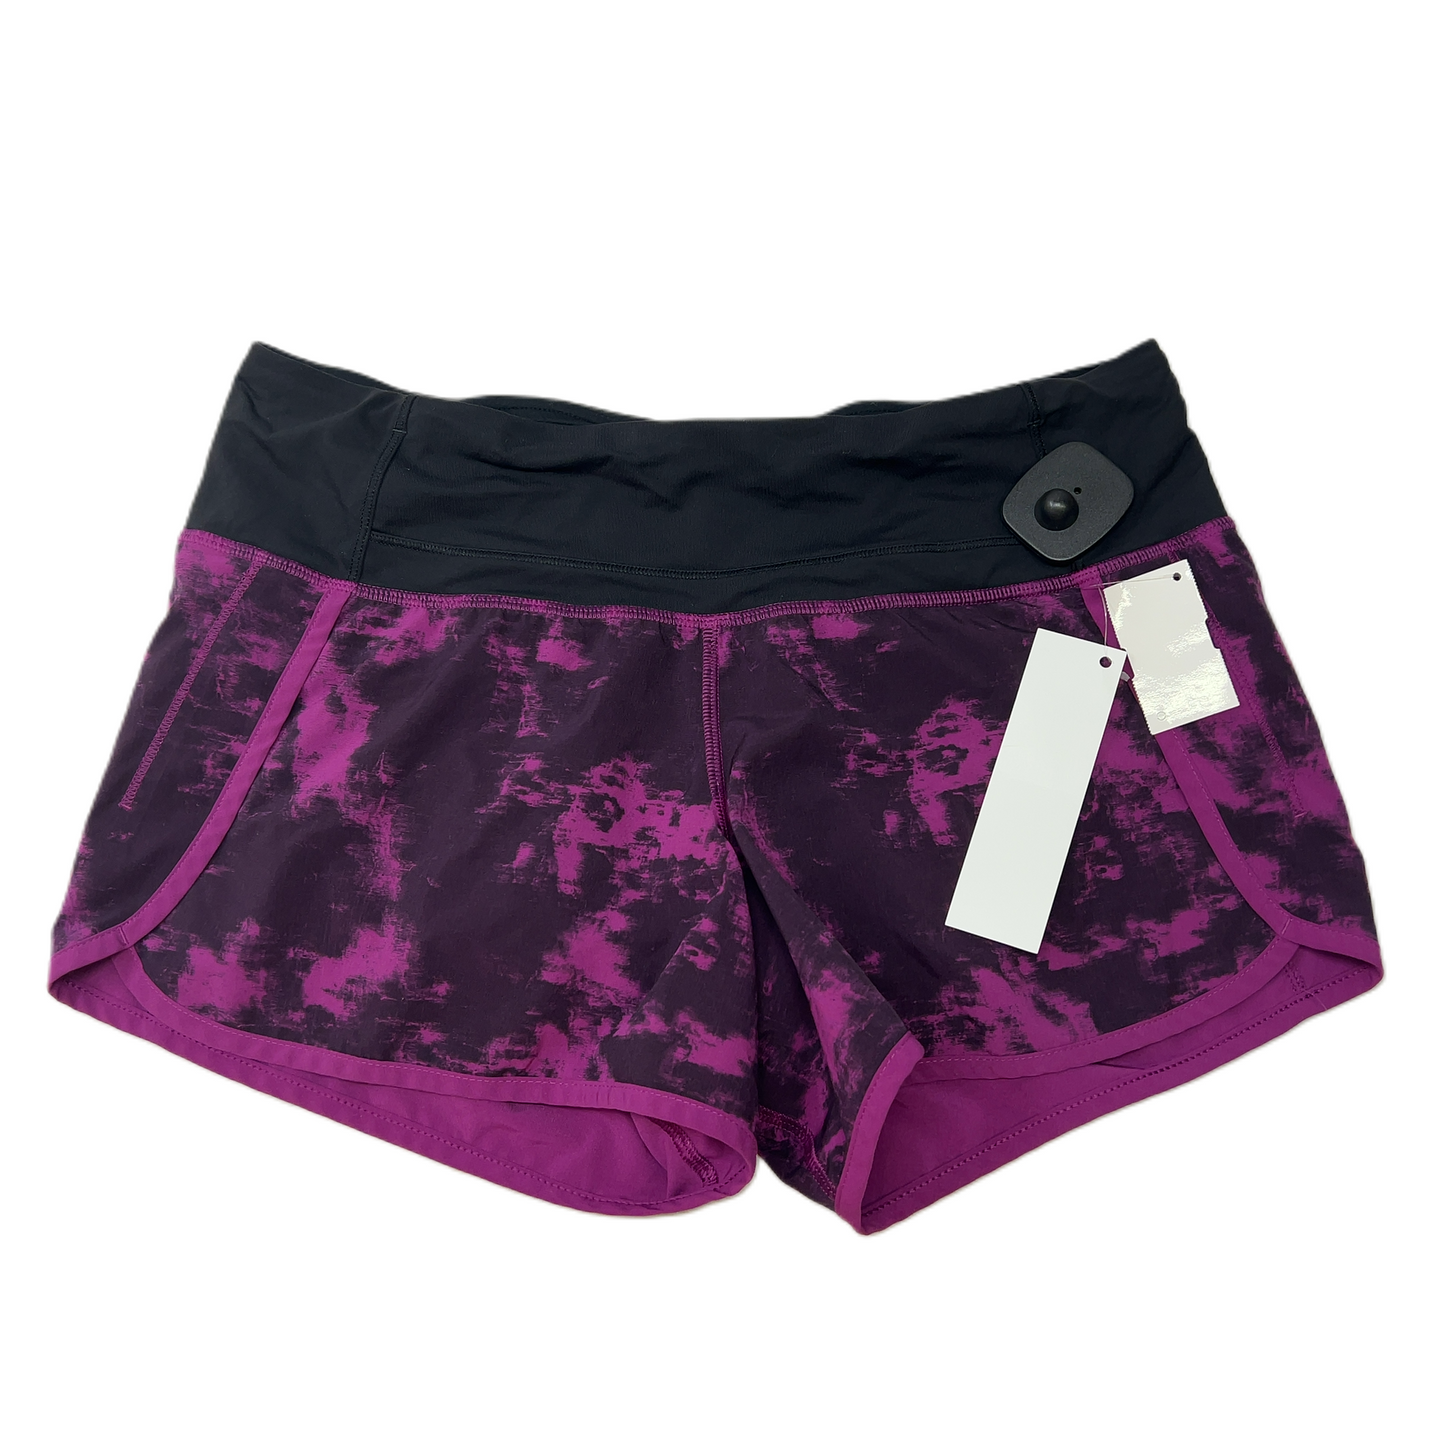 Purple  Athletic Shorts By Lululemon  Size: S